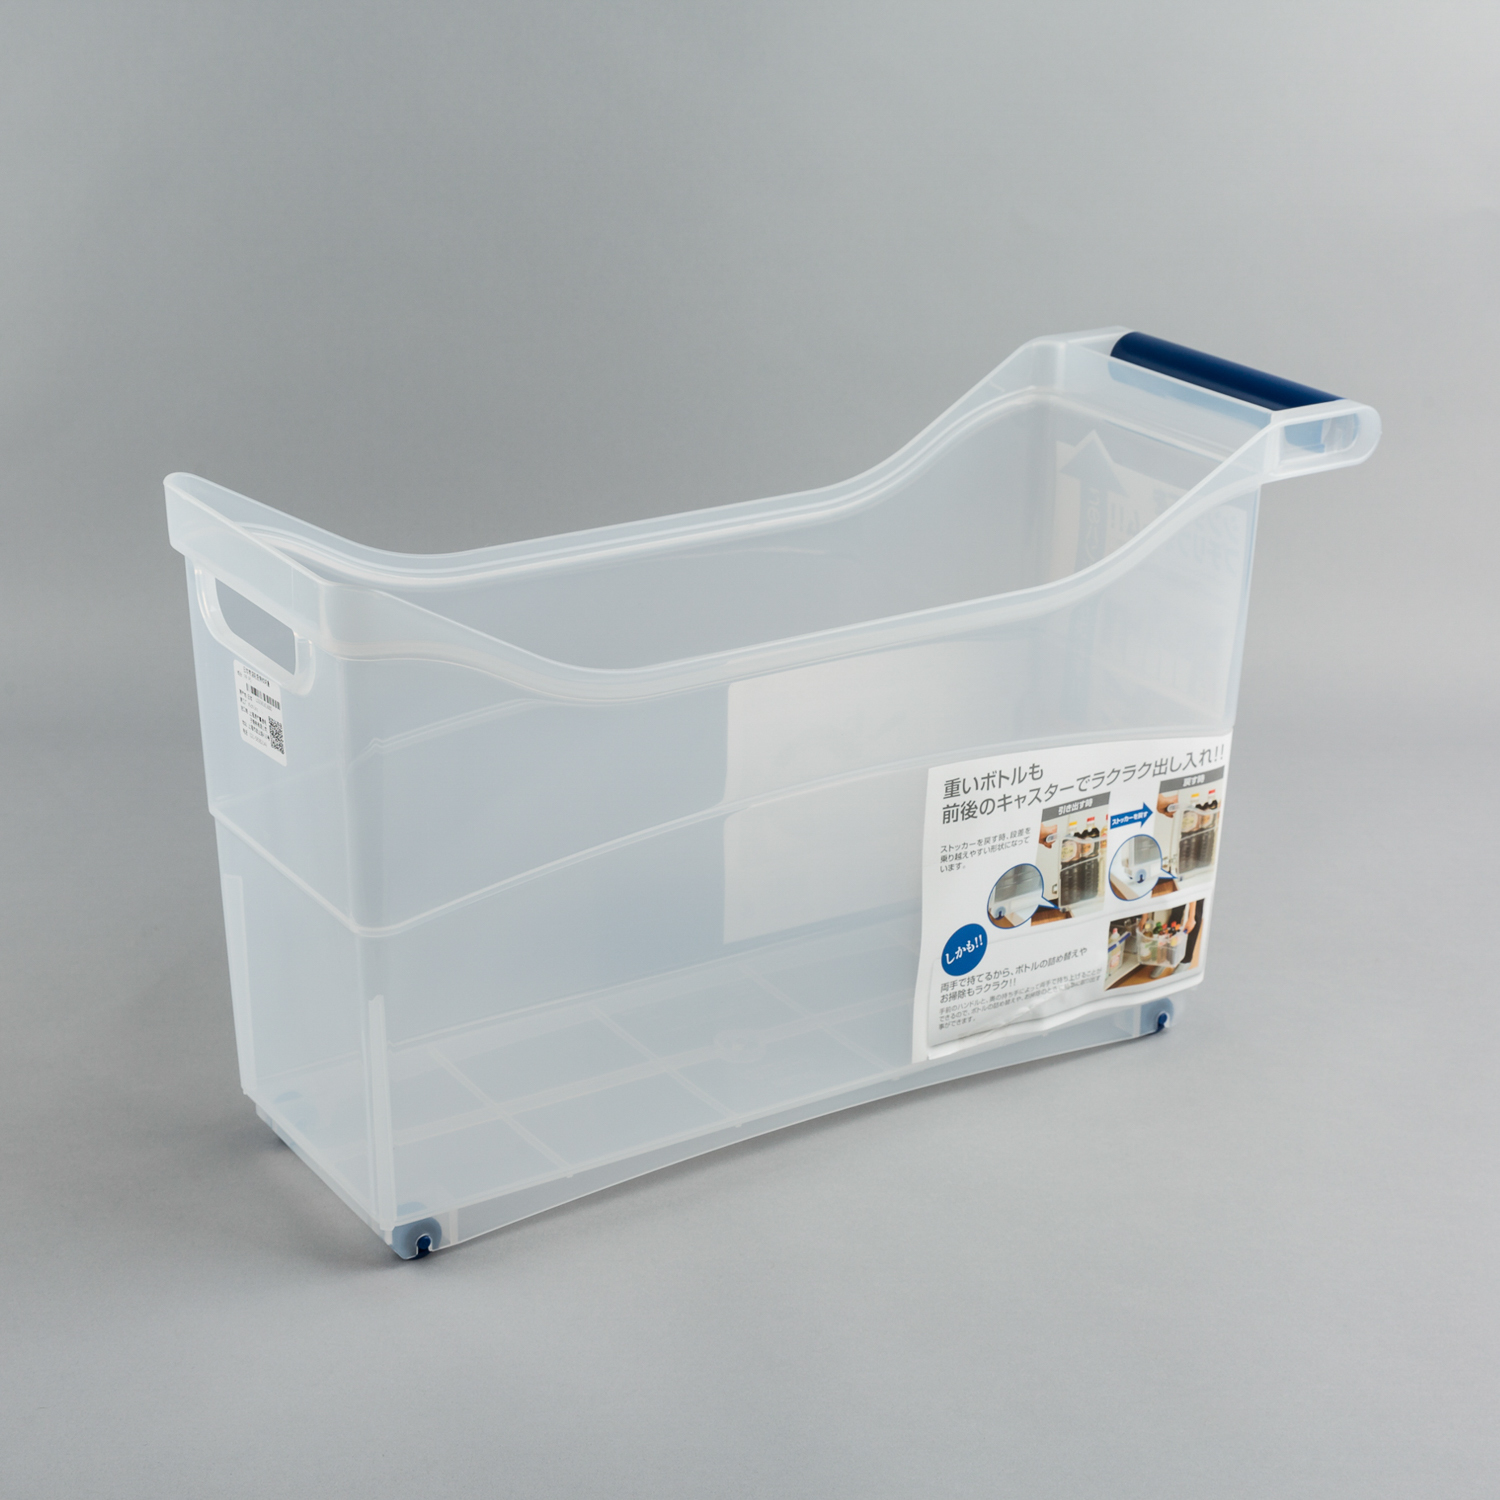 日本原产inomata带滚轮厨房收纳盒收纳箱储物箱整理箱 透明